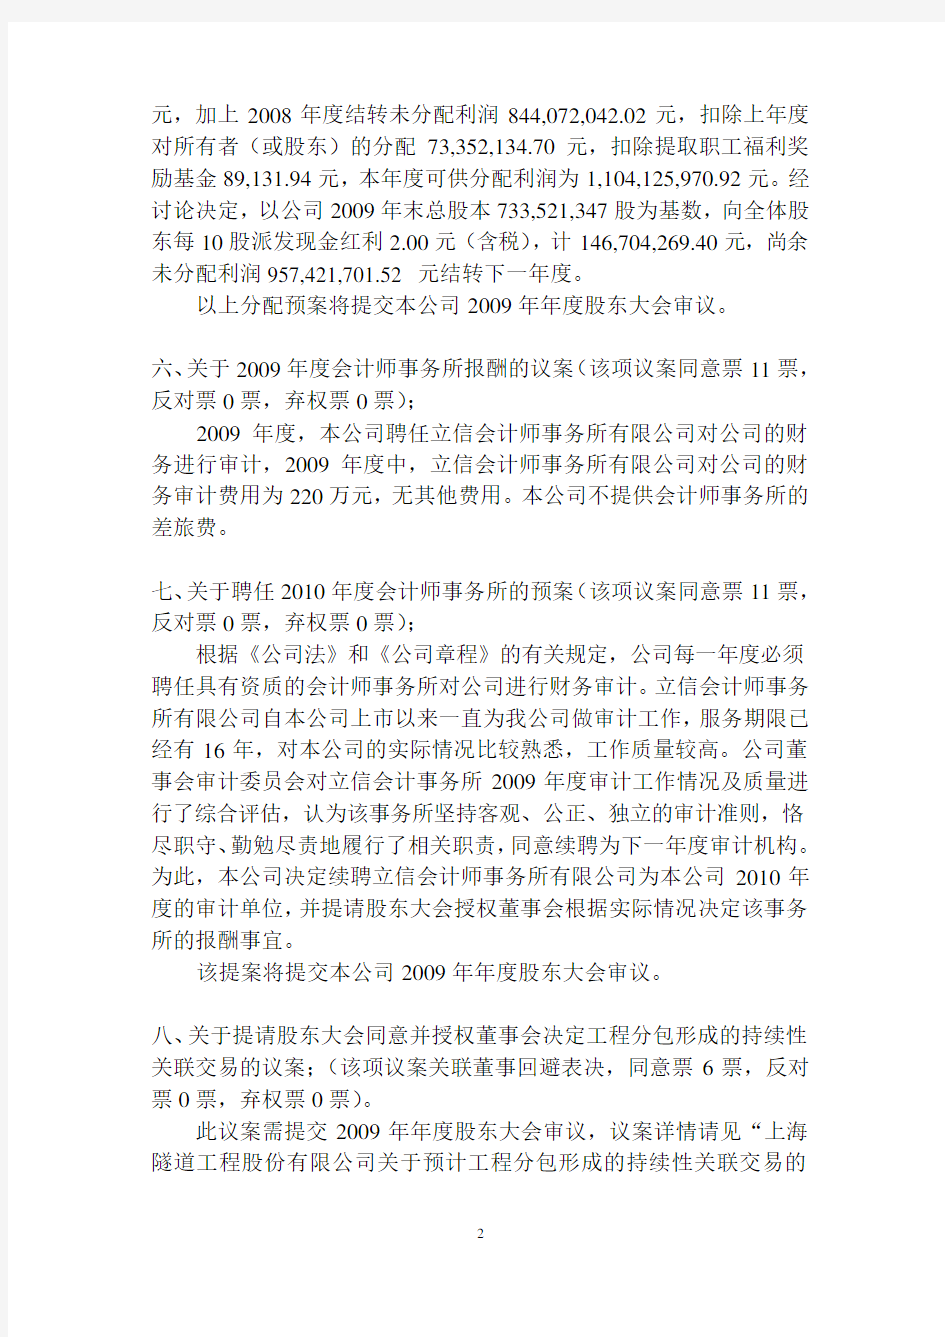 上海隧道工程股份有限公司第六届董事会第四次会议决议公告